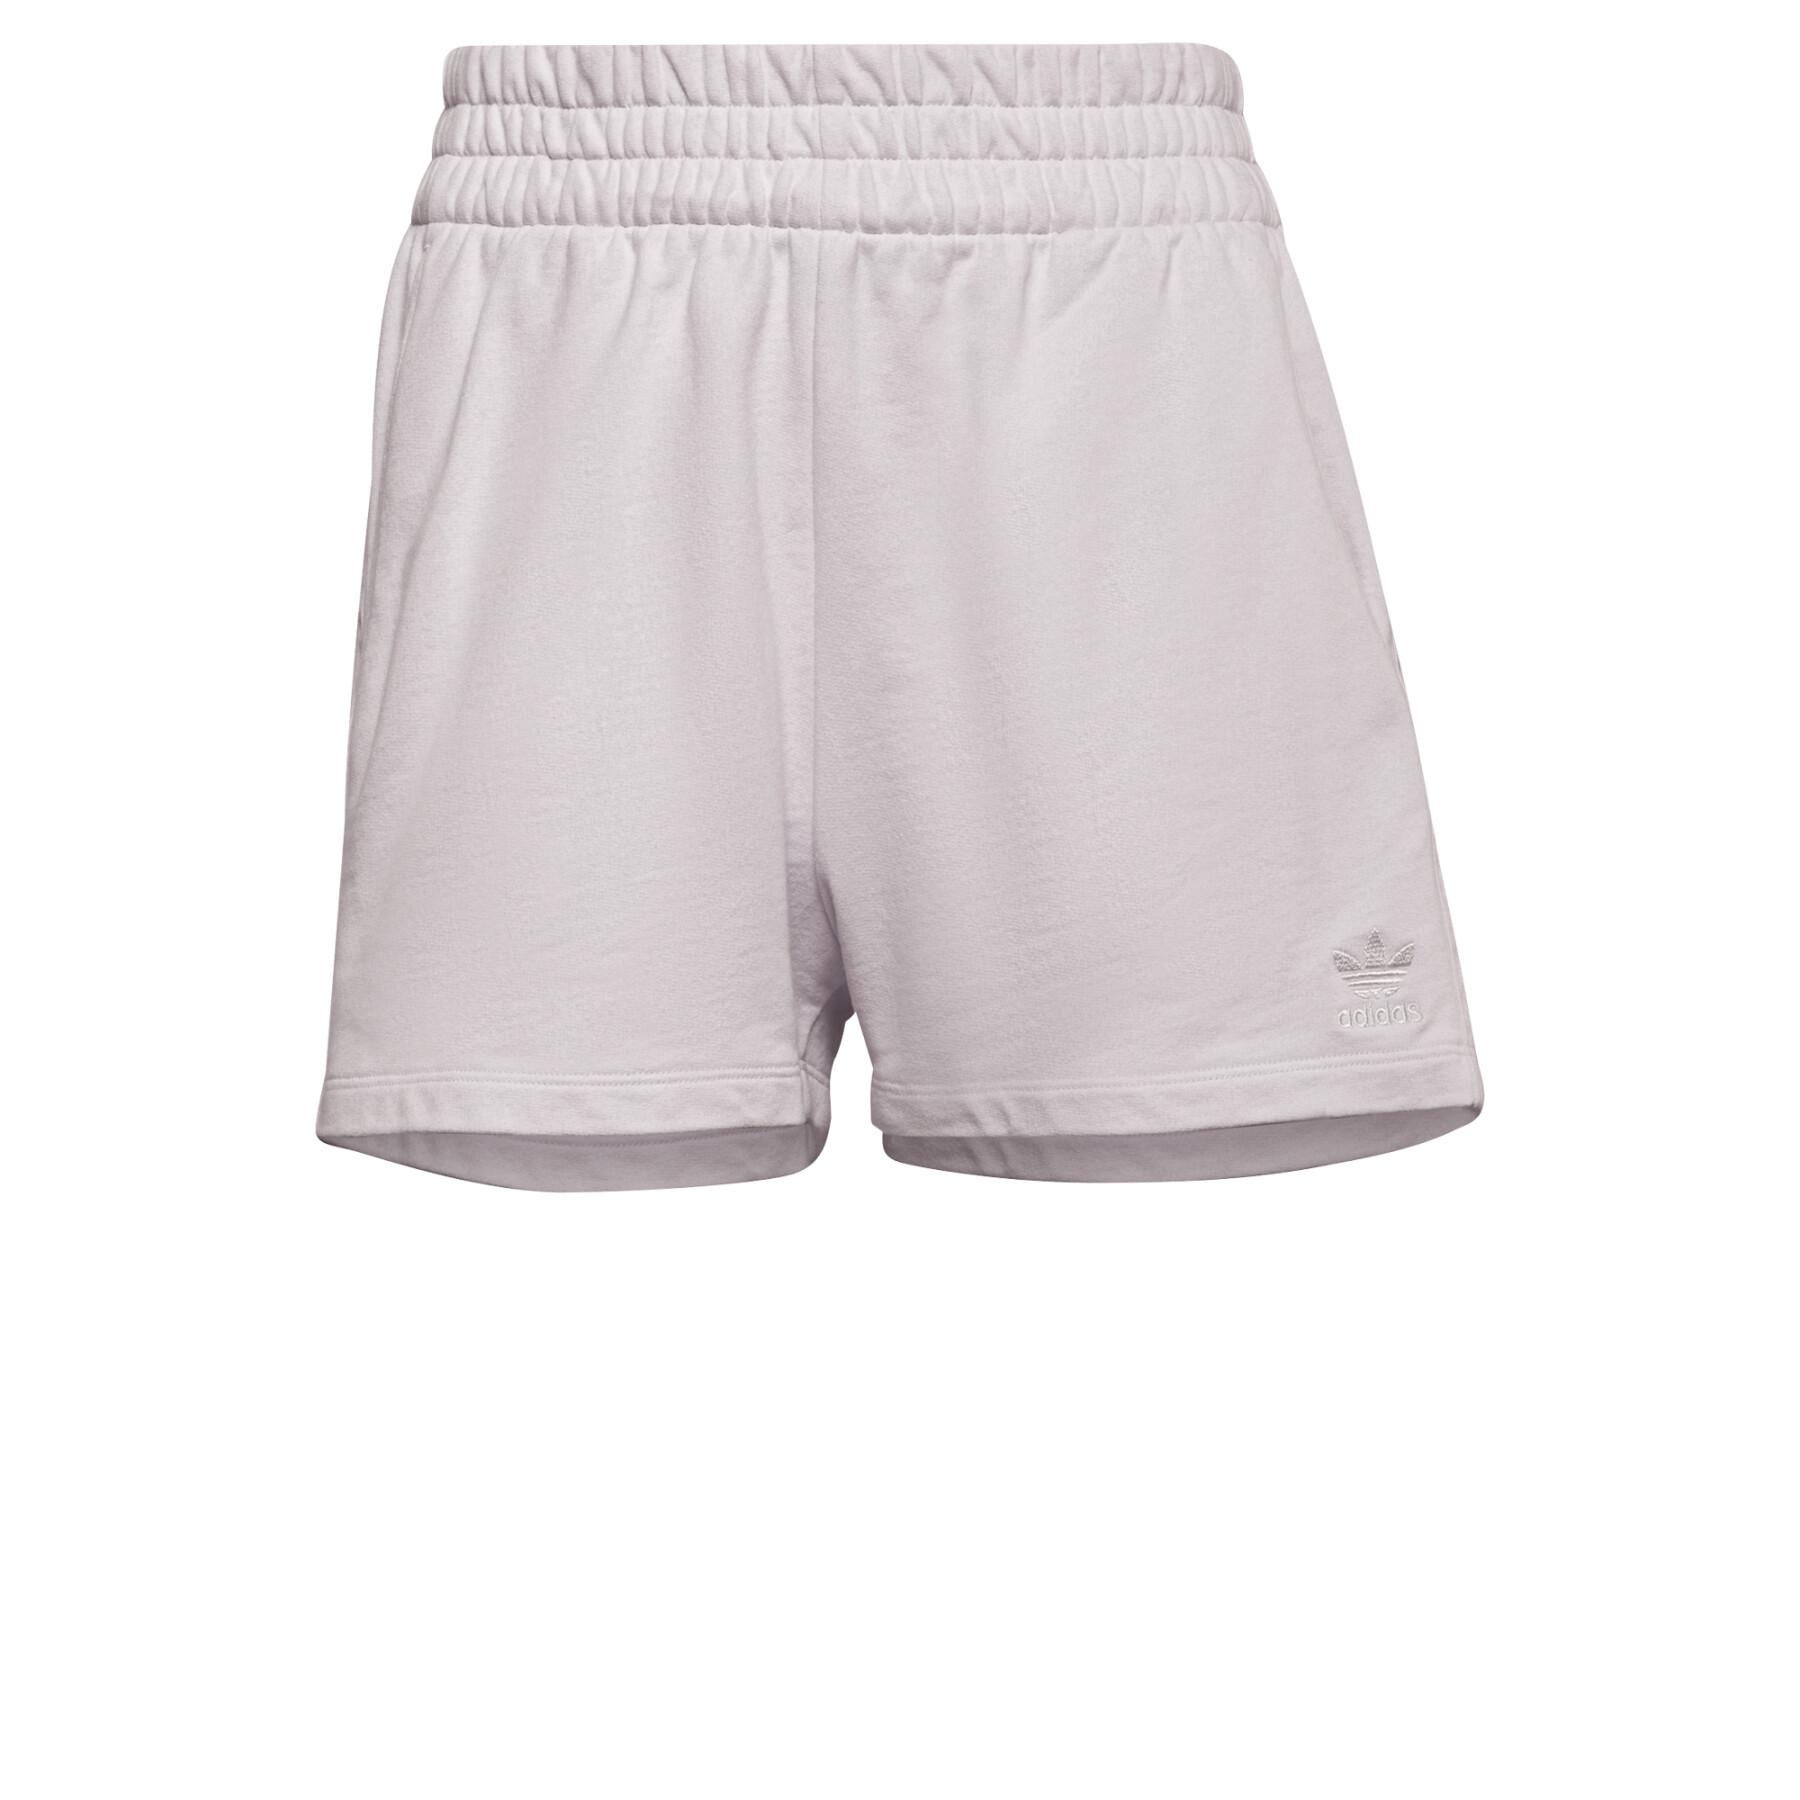 Pantalón corto de mujer adidas Originals Tennis Luxe 3-Stripes